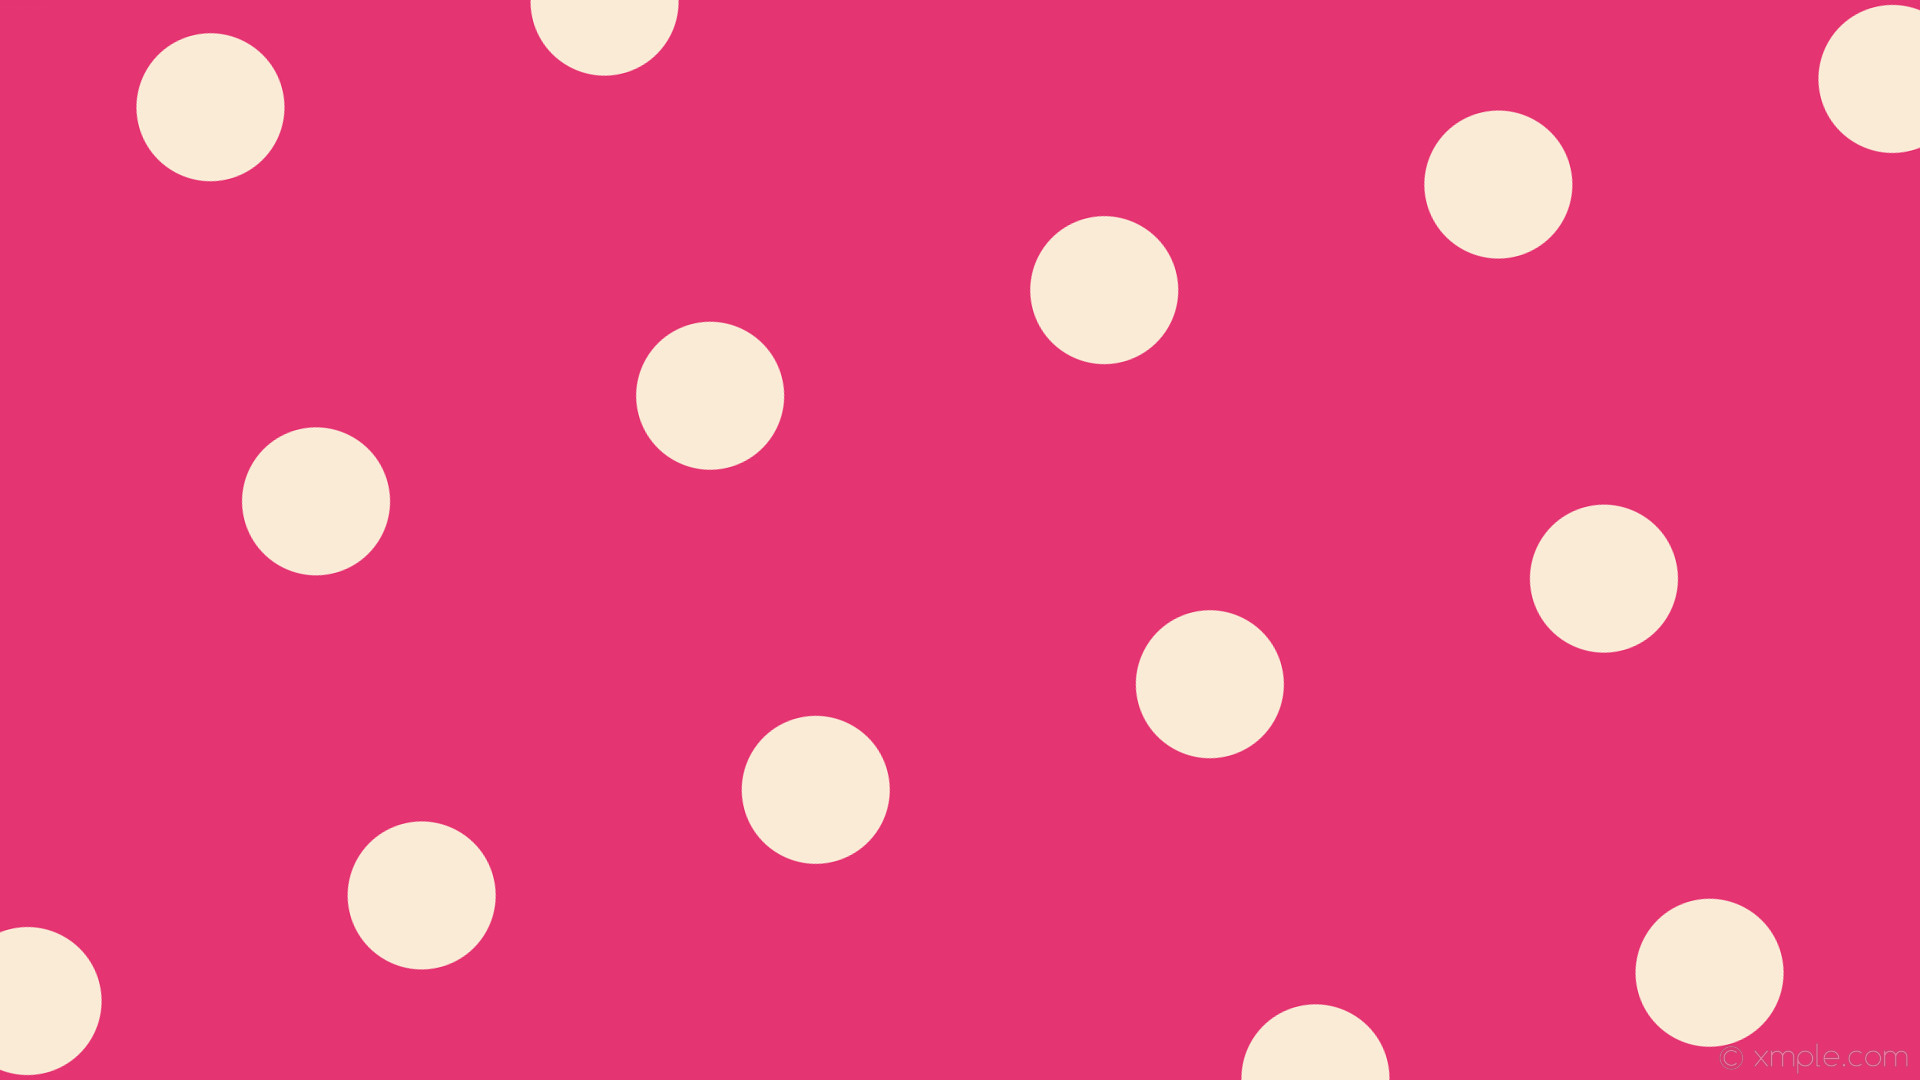 1920x1080 wallpaper dots polka pink white spots antique white #e53472 #faebd7 285Â°  148px 408px